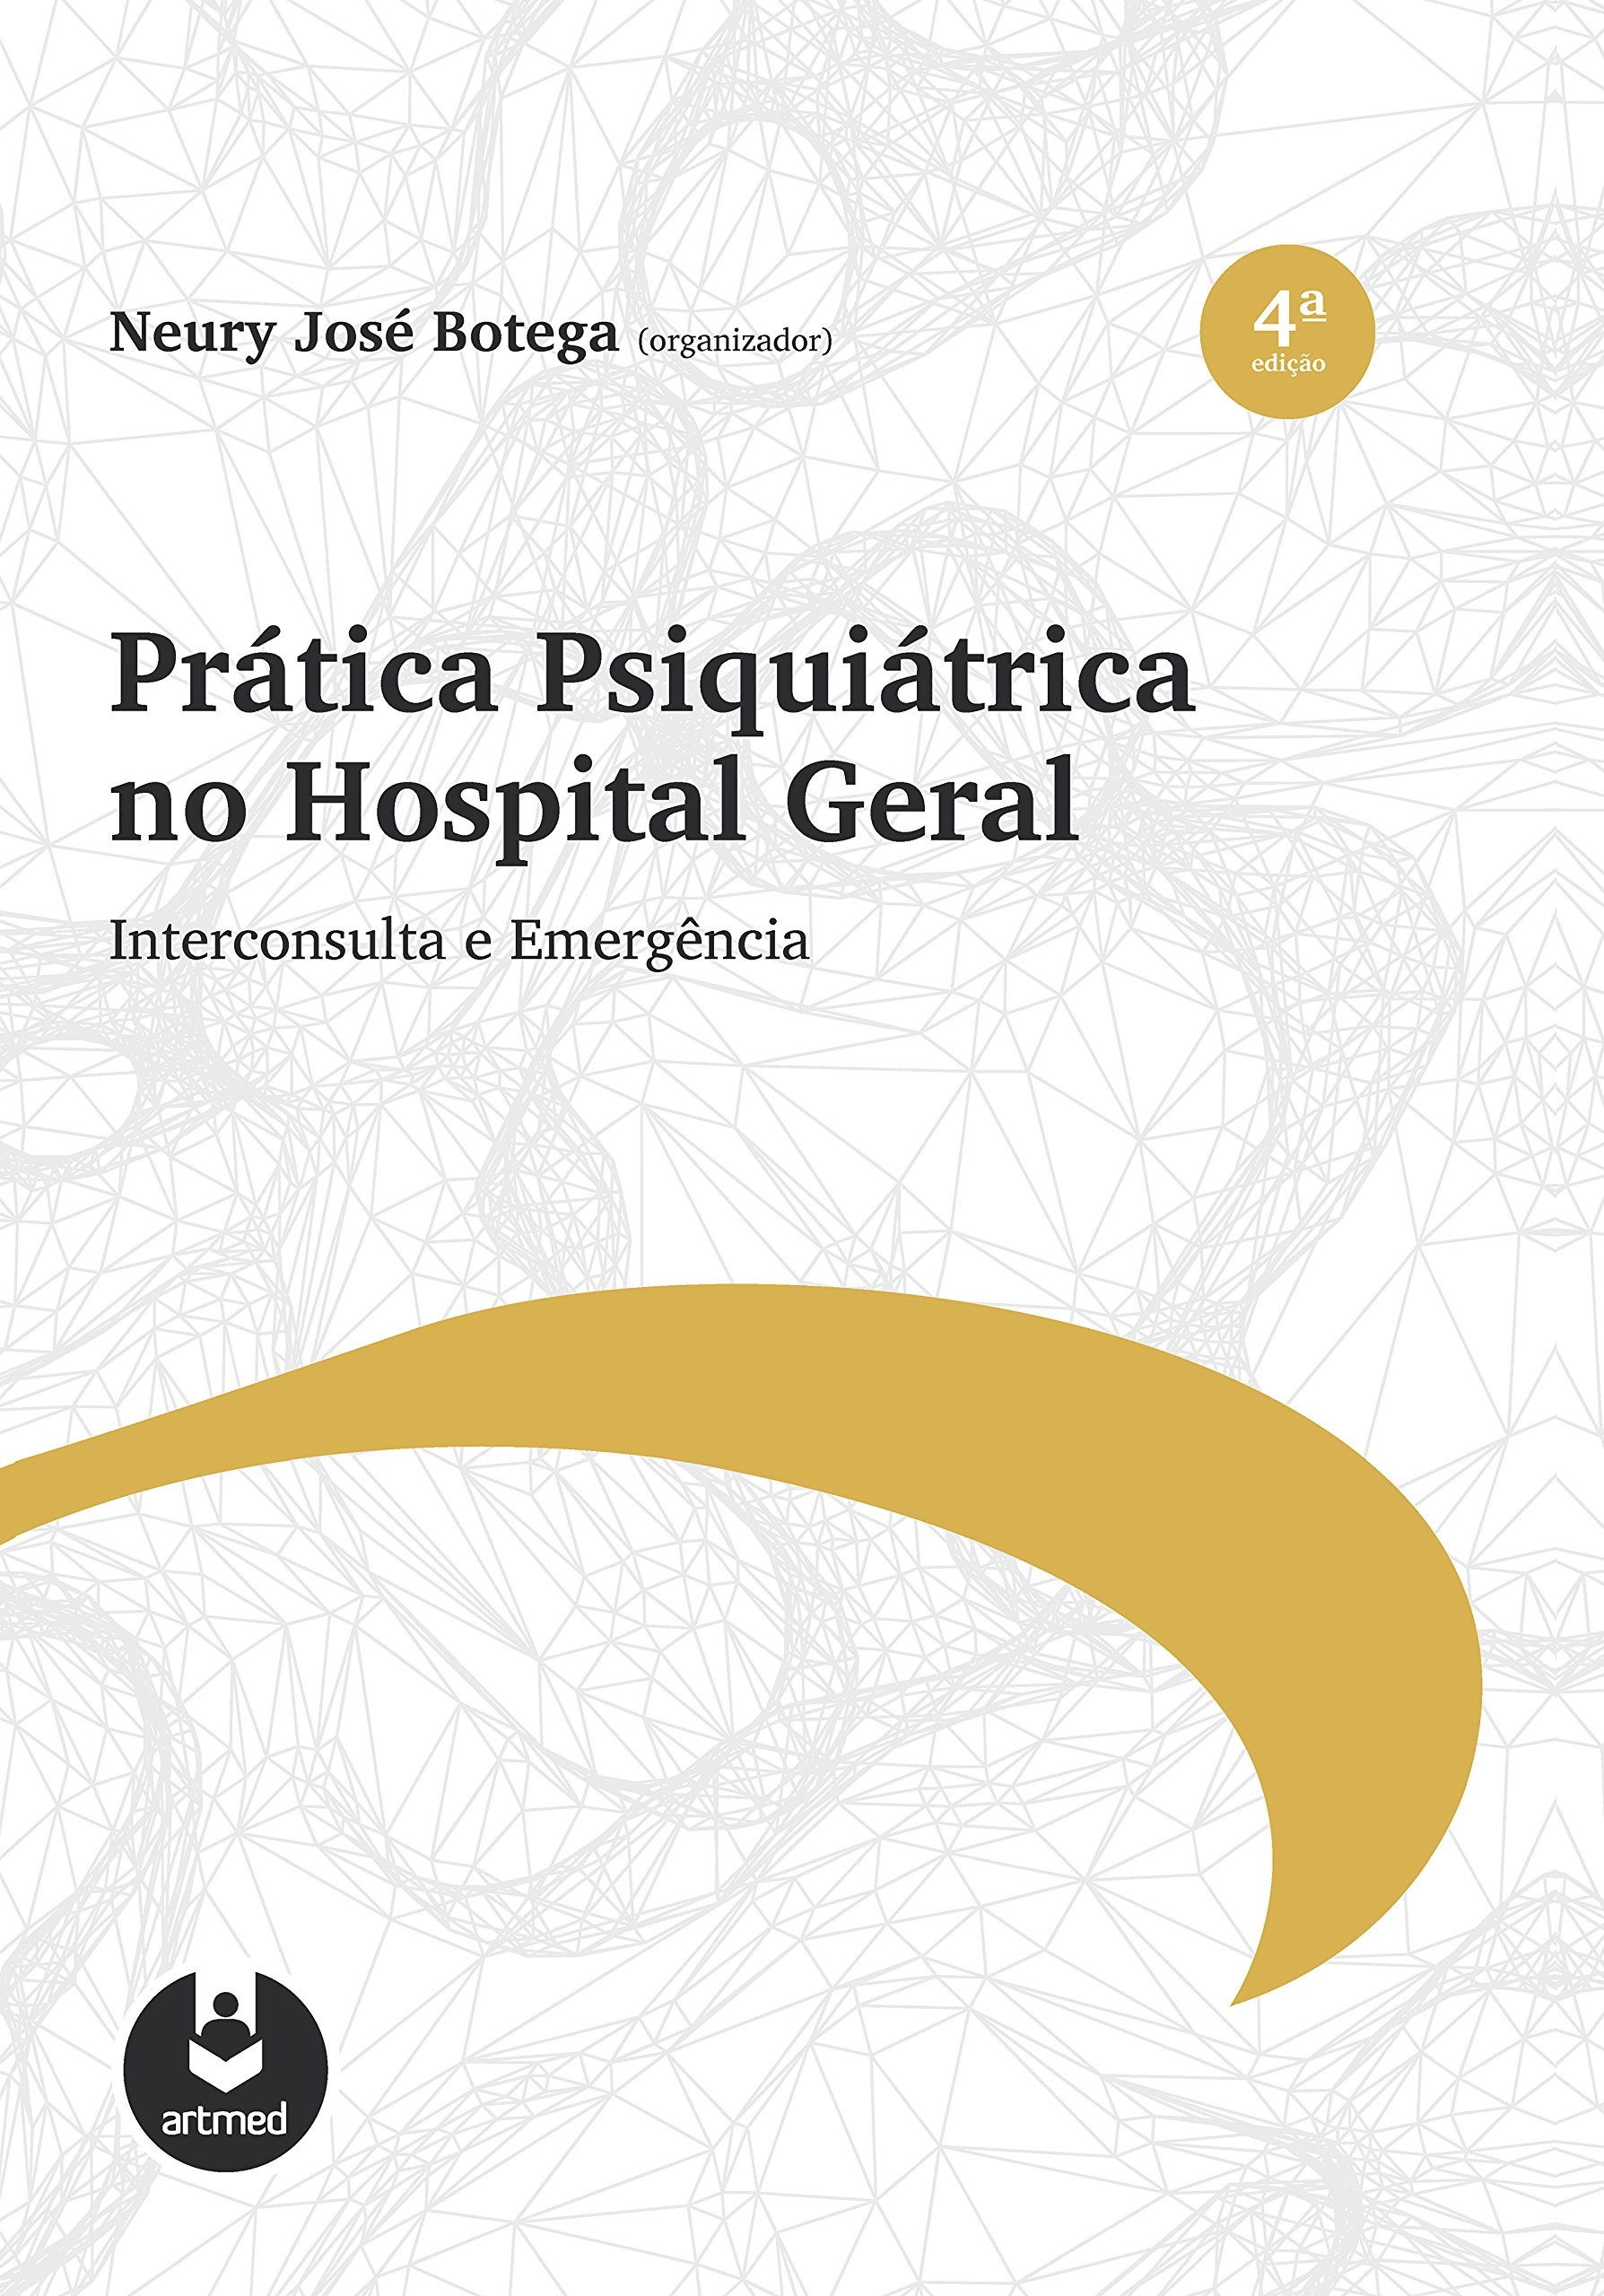 Pratica Psiquiátrica no Hospital Geral - Interconsulta e Emergência